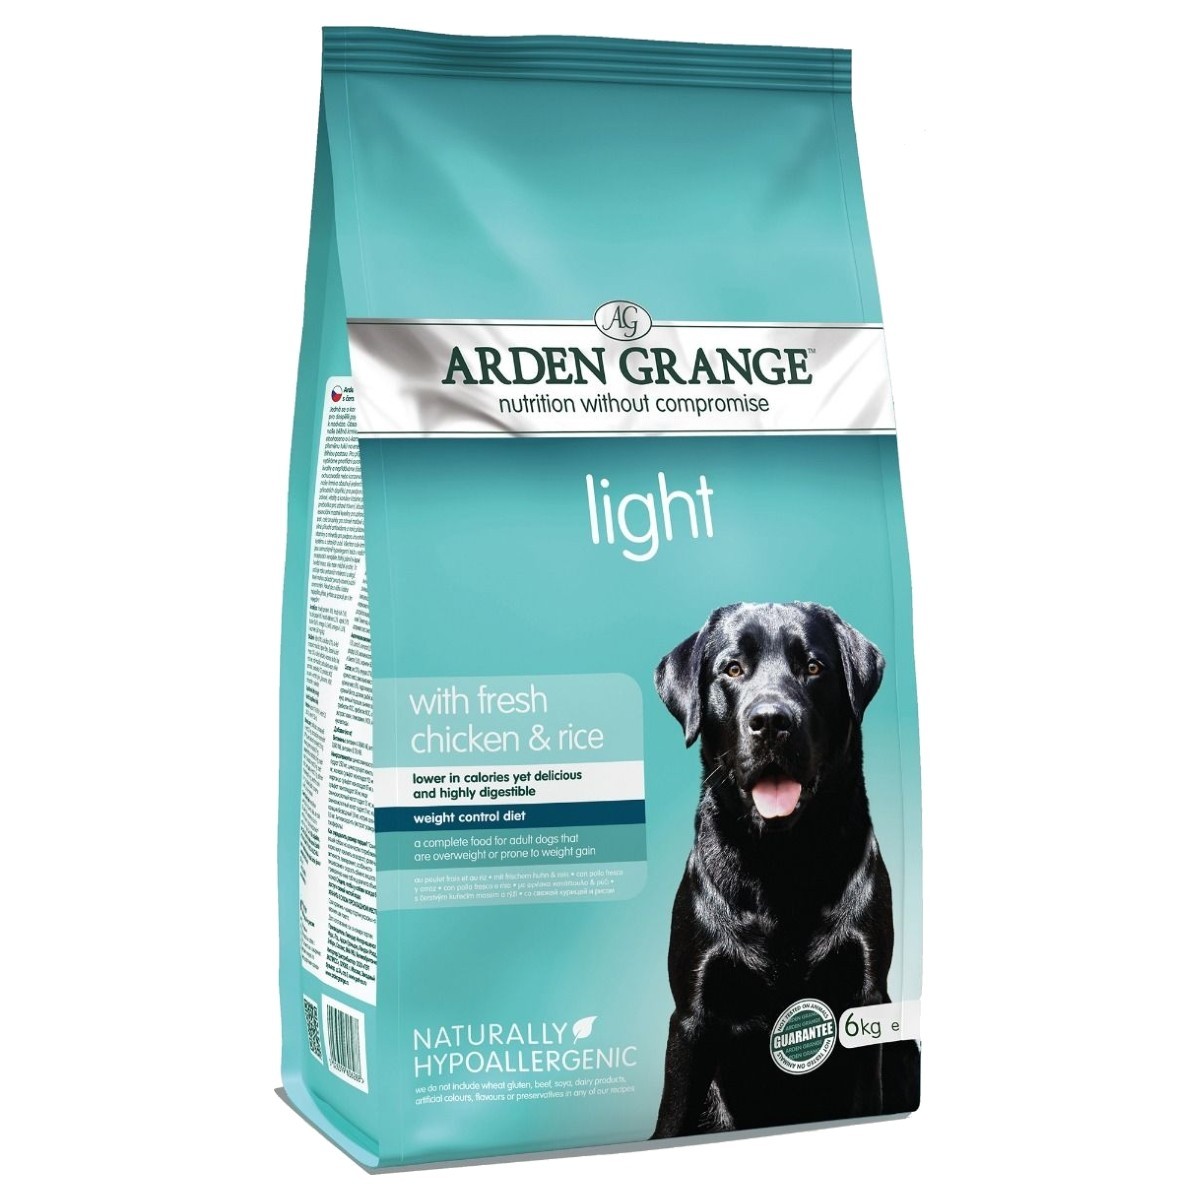 Готовый корм для собак. Корм для собак Арден Грендж. Корм Arden Grange. Senior&Light sensitive (Arden Grange для чувствительных пожилых собак). Arden Grange sensitive для собак.